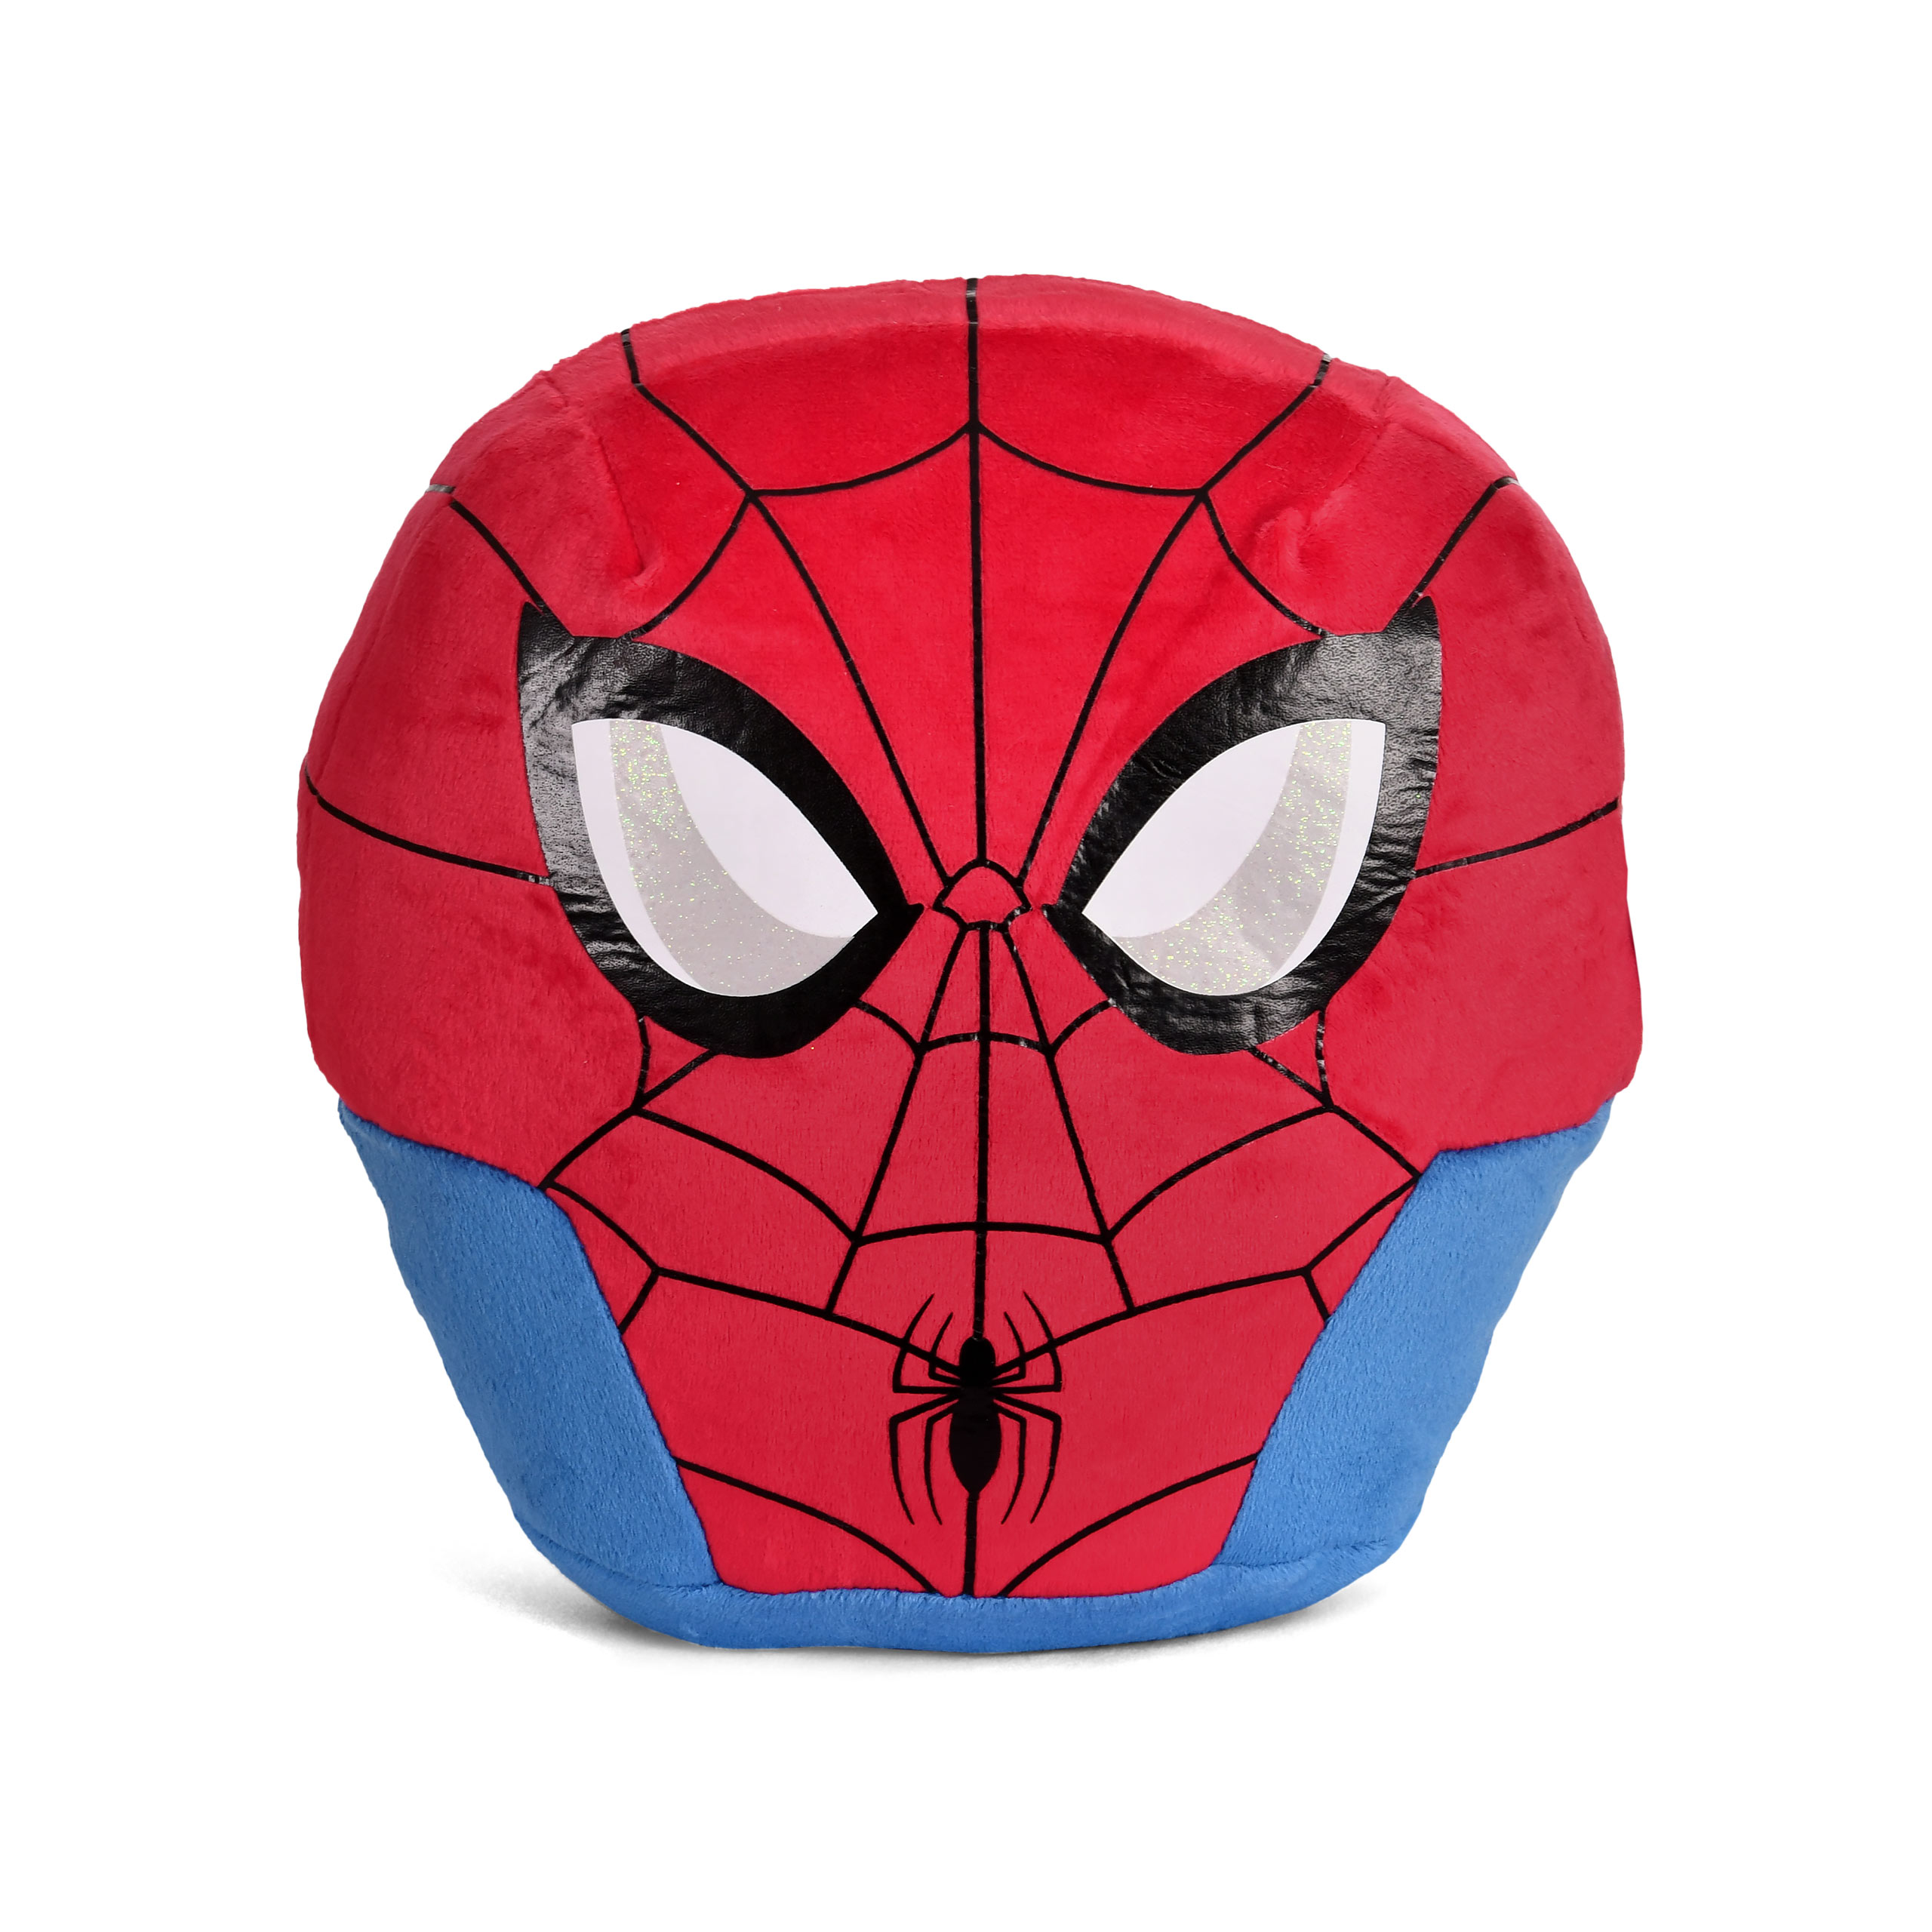 Spider-Man Squishy Beanies Plüsch Kissen - Marvel